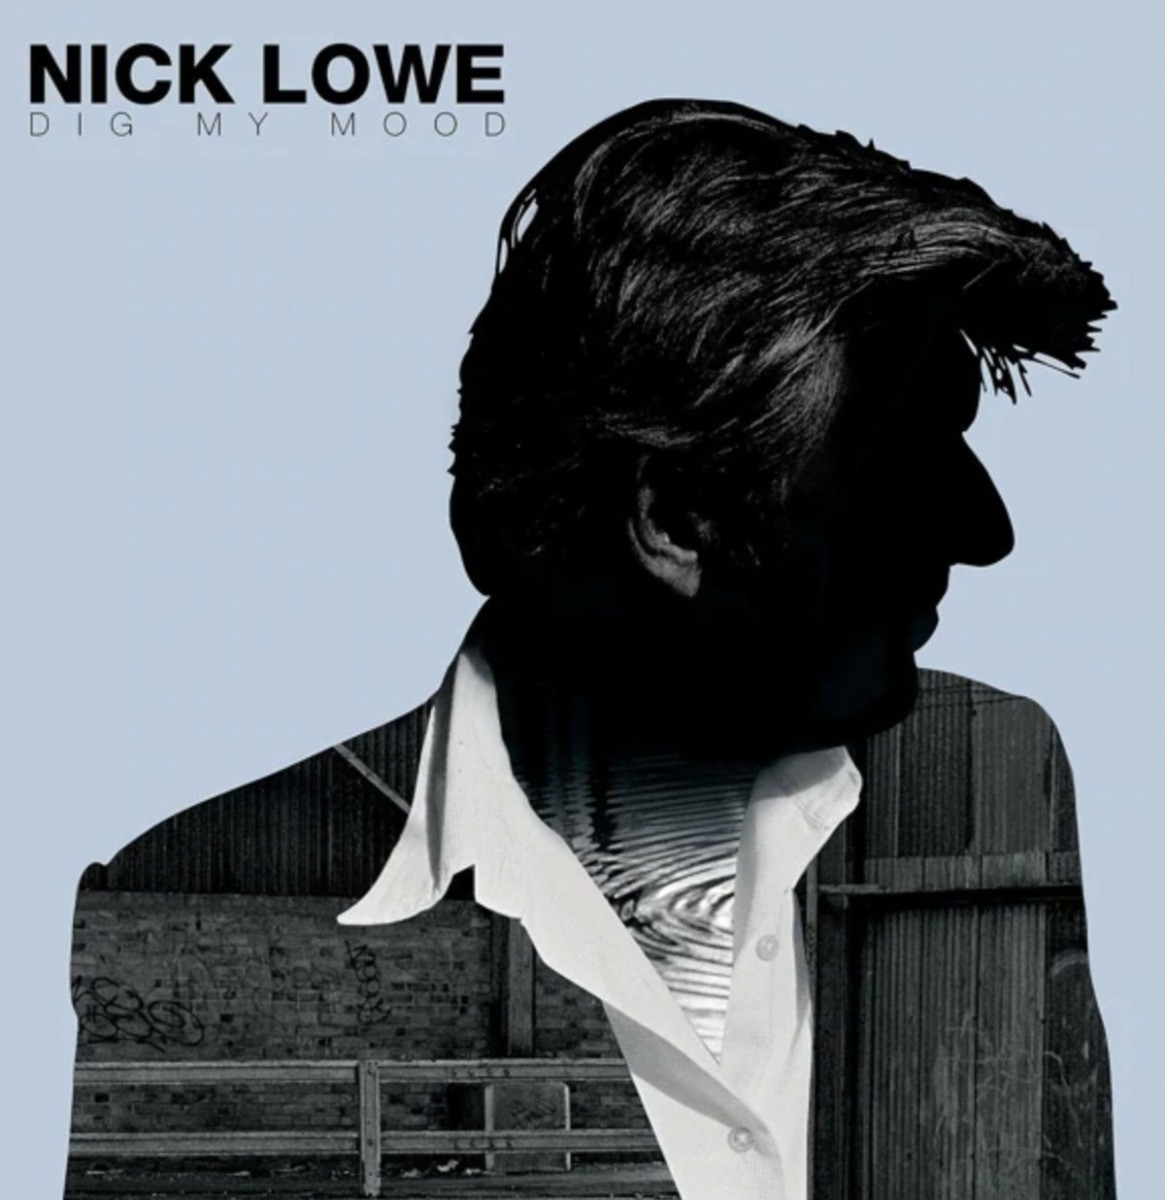 Nick Lowe - Dig My Mood LP